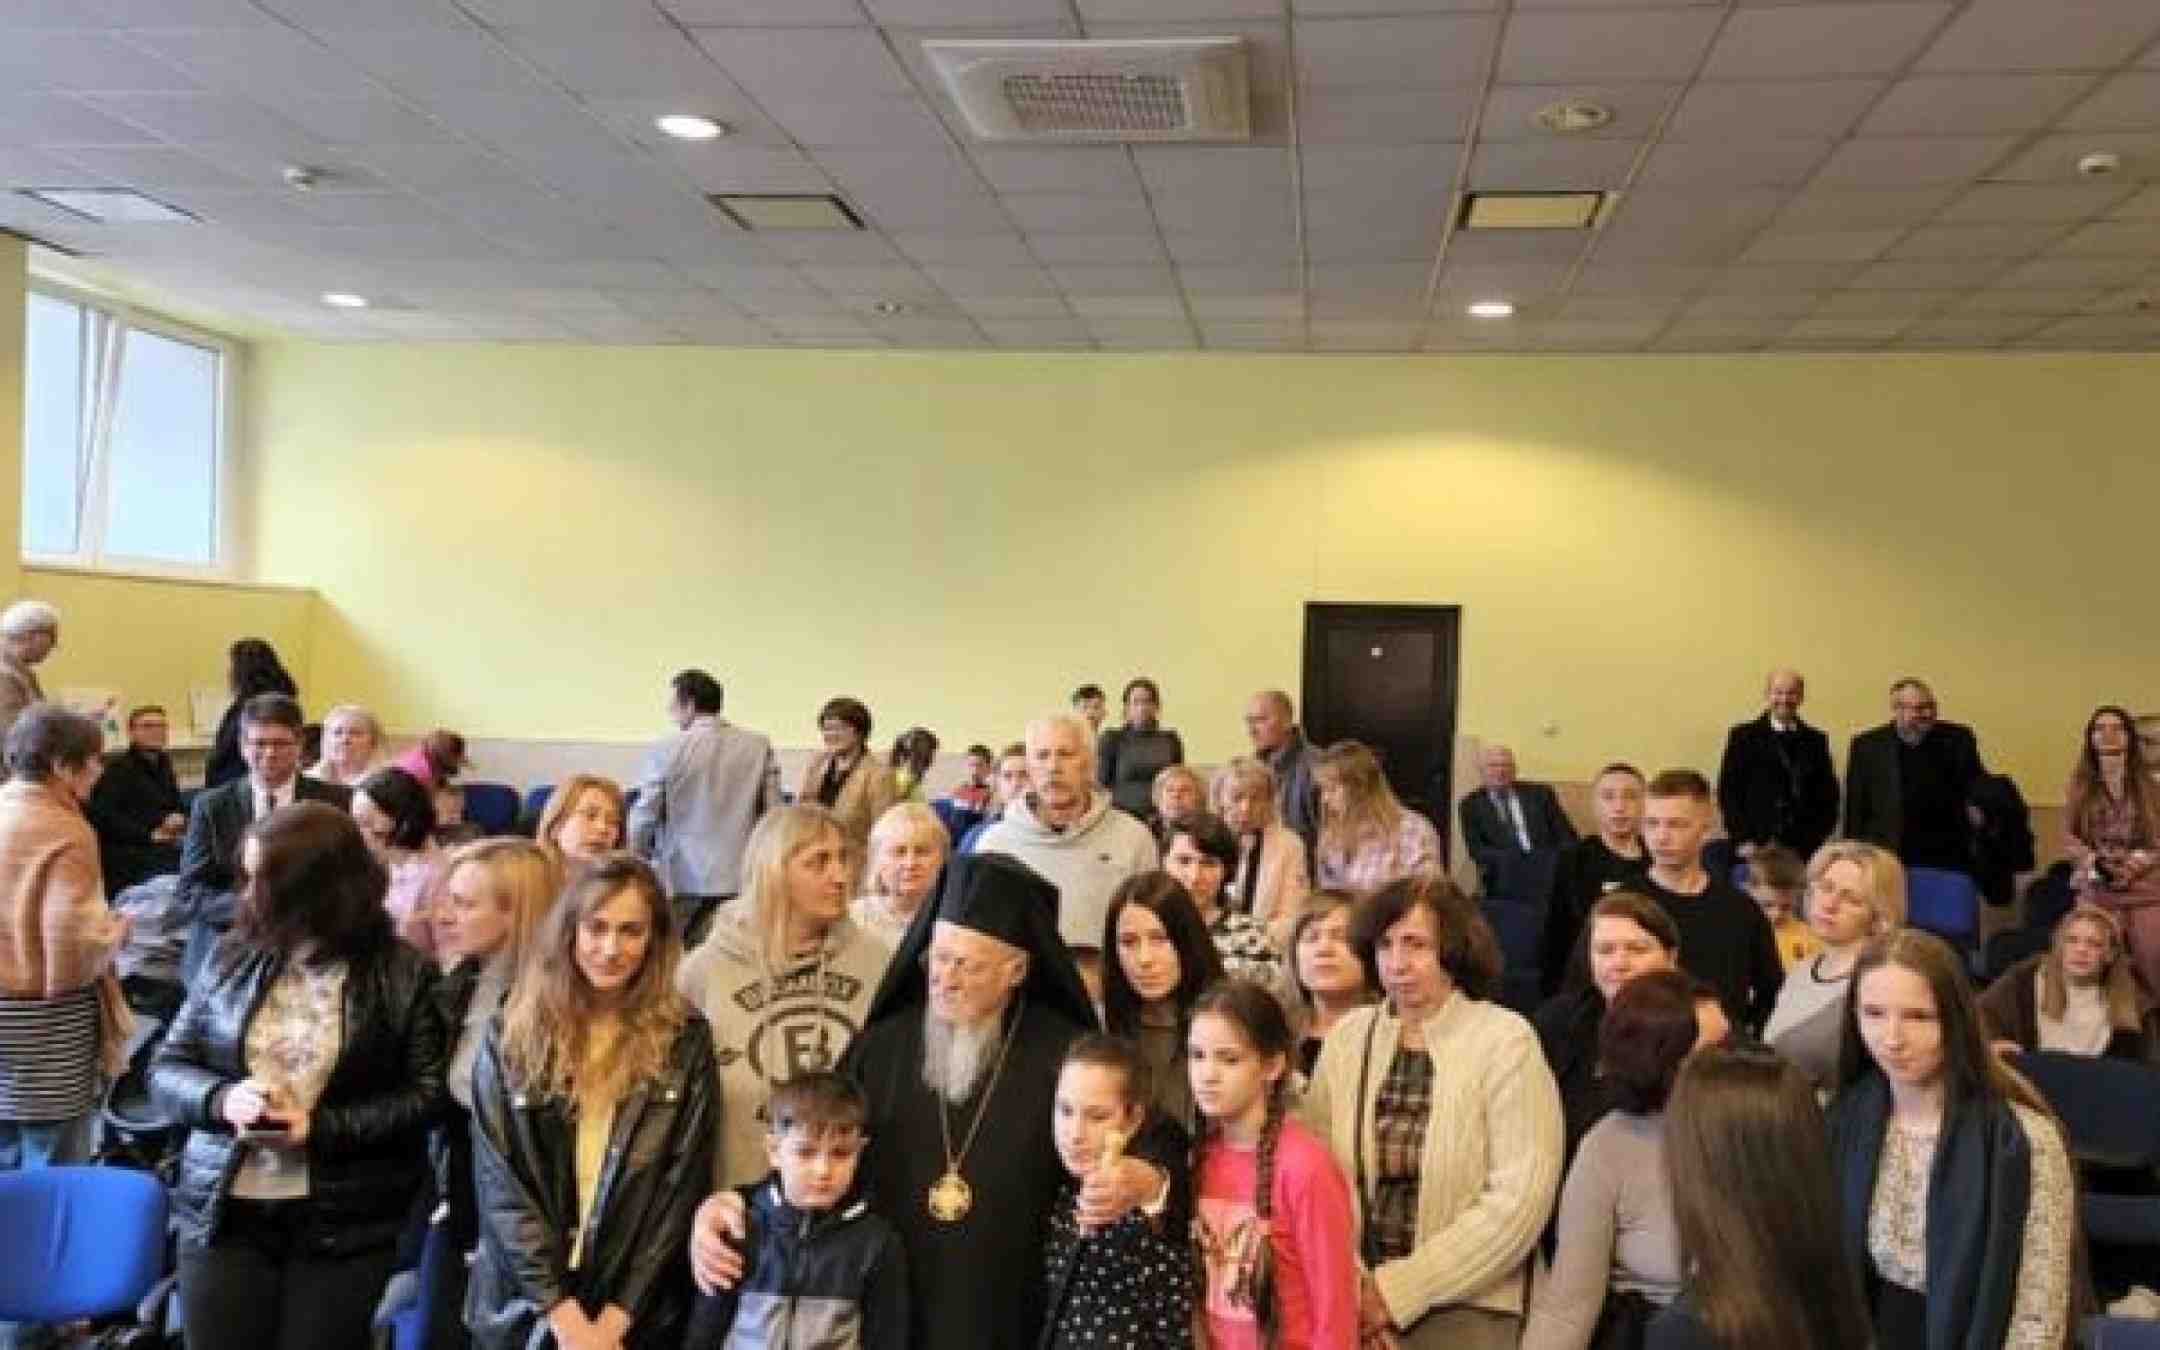 Patriarkka Bartolomeos Varsovassa Ukrainan pakolaisia tapaamassa